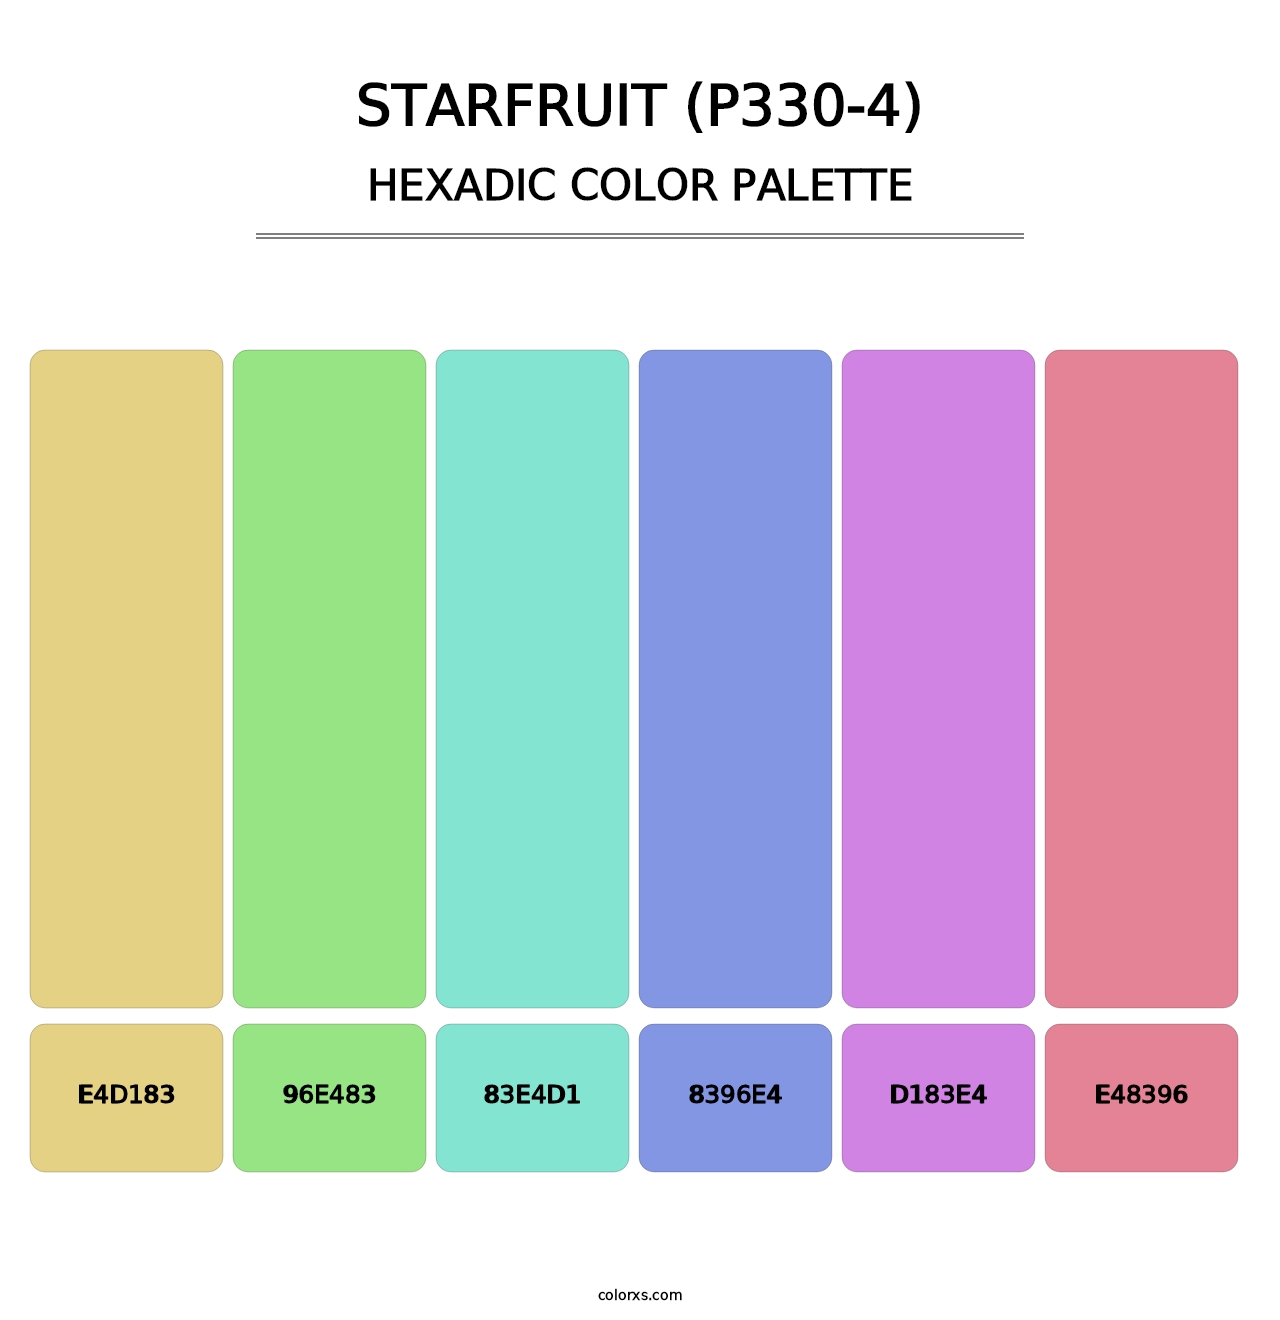 Starfruit (P330-4) - Hexadic Color Palette